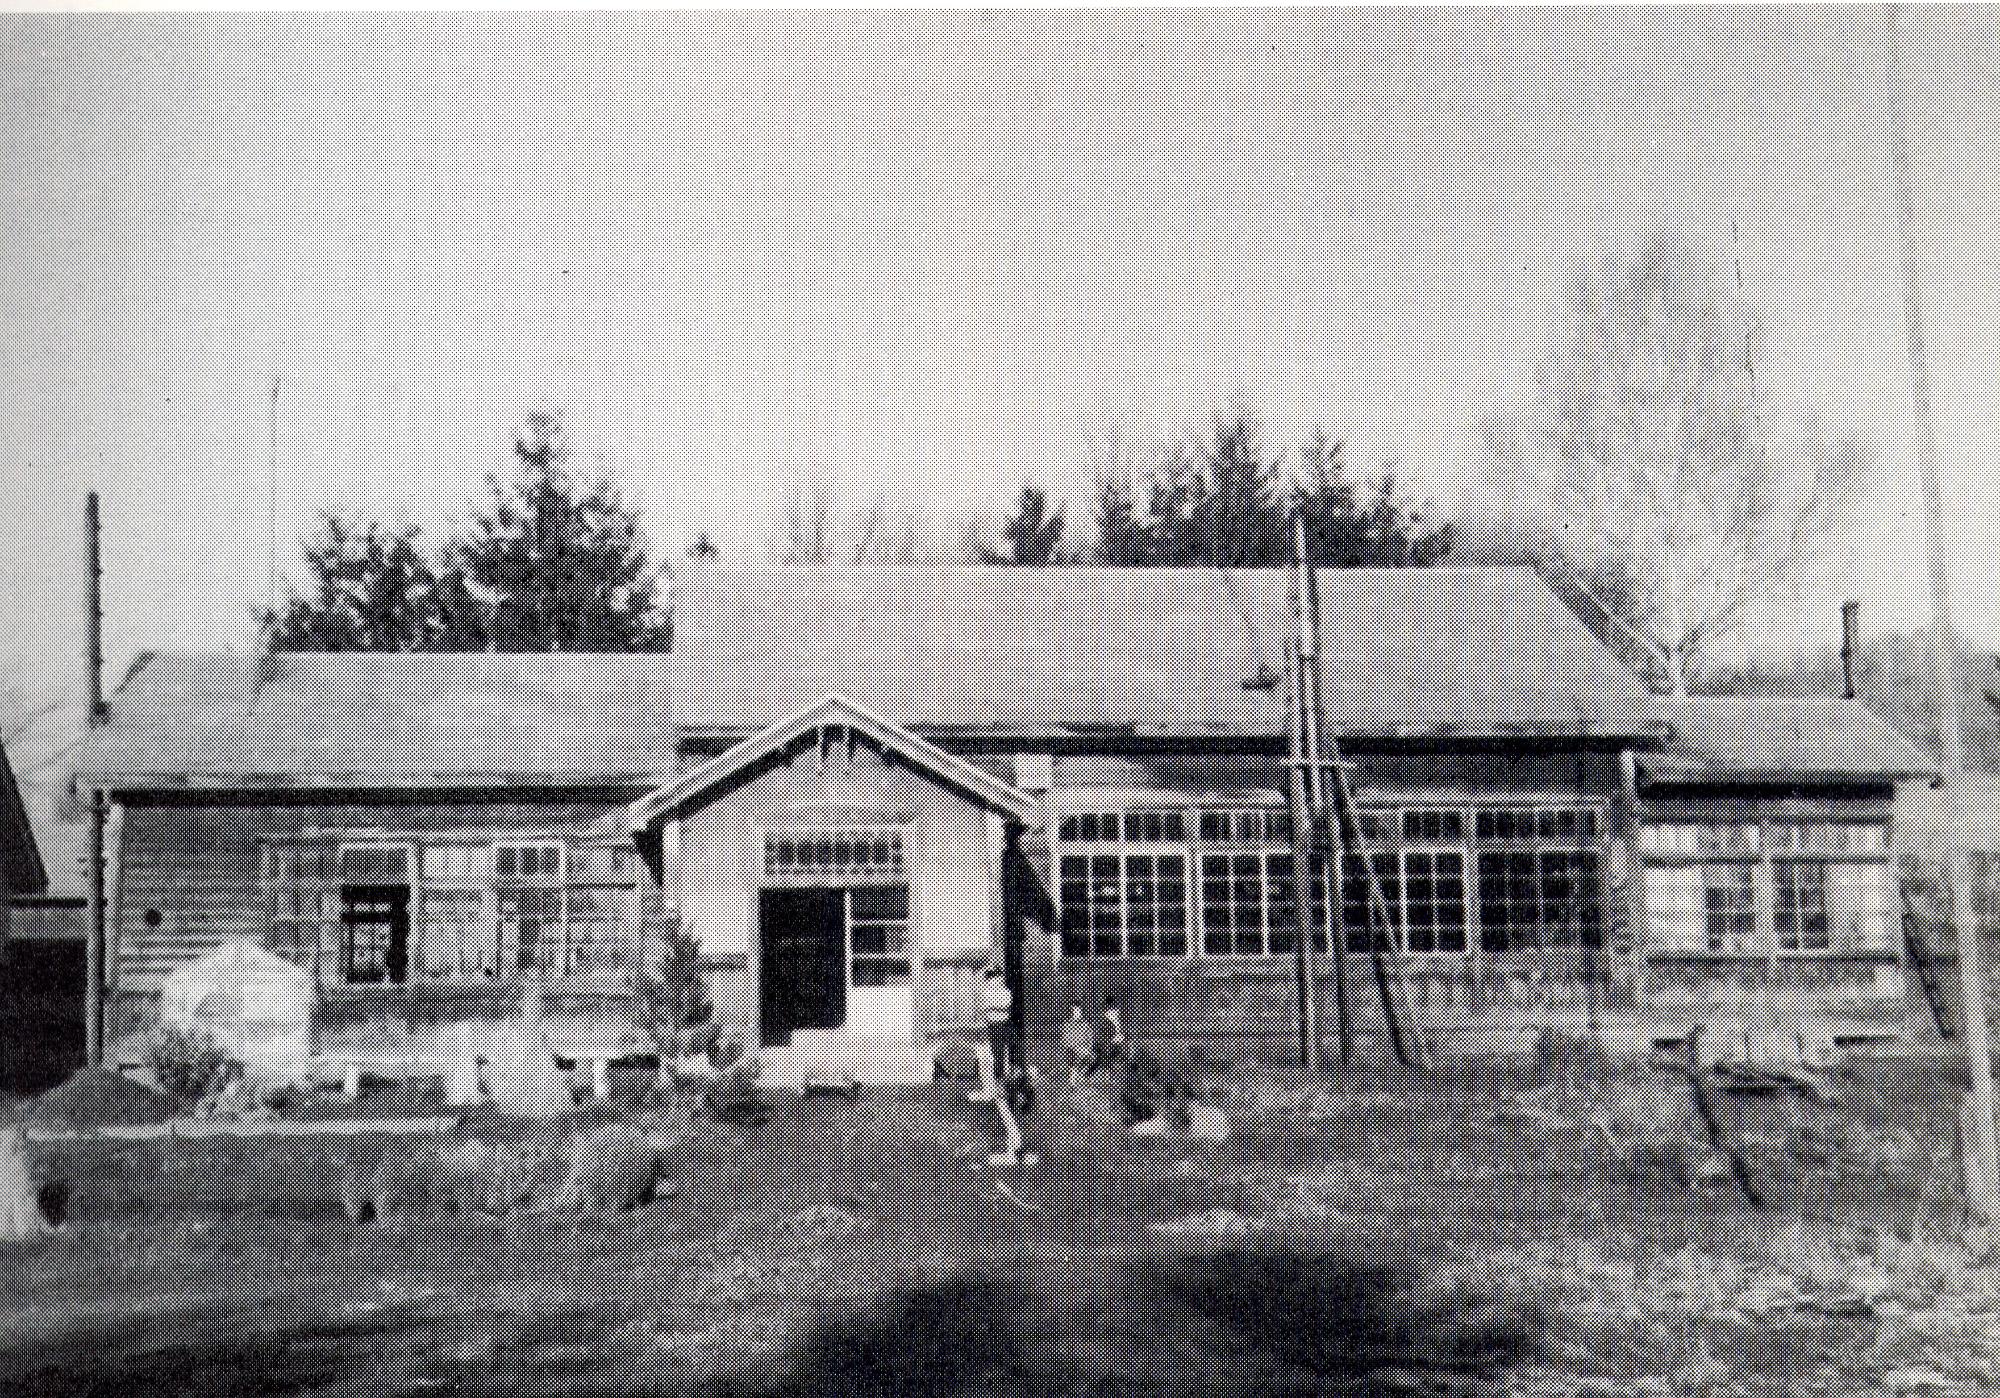 中央入口の右側に1名の児童が立ち、隣に2名の児童が座っている旧三郷小学校校舎の白黒写真